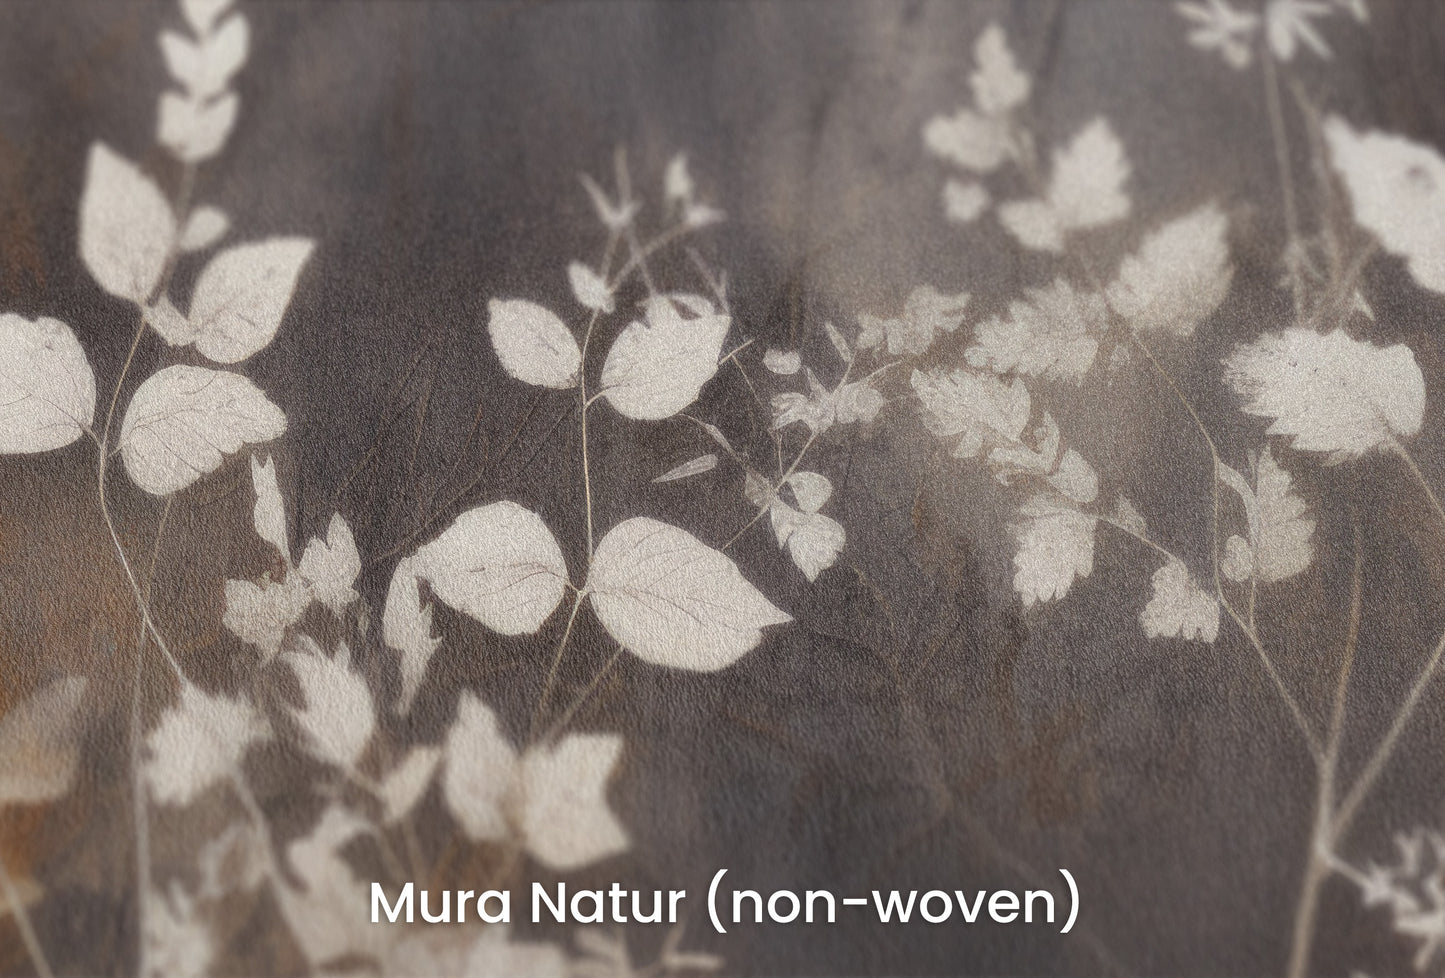 Zbliżenie na artystyczną fototapetę o nazwie Misty Floral Contrast na podłożu Mura Natur (non-woven) - naturalne i ekologiczne podłoże.